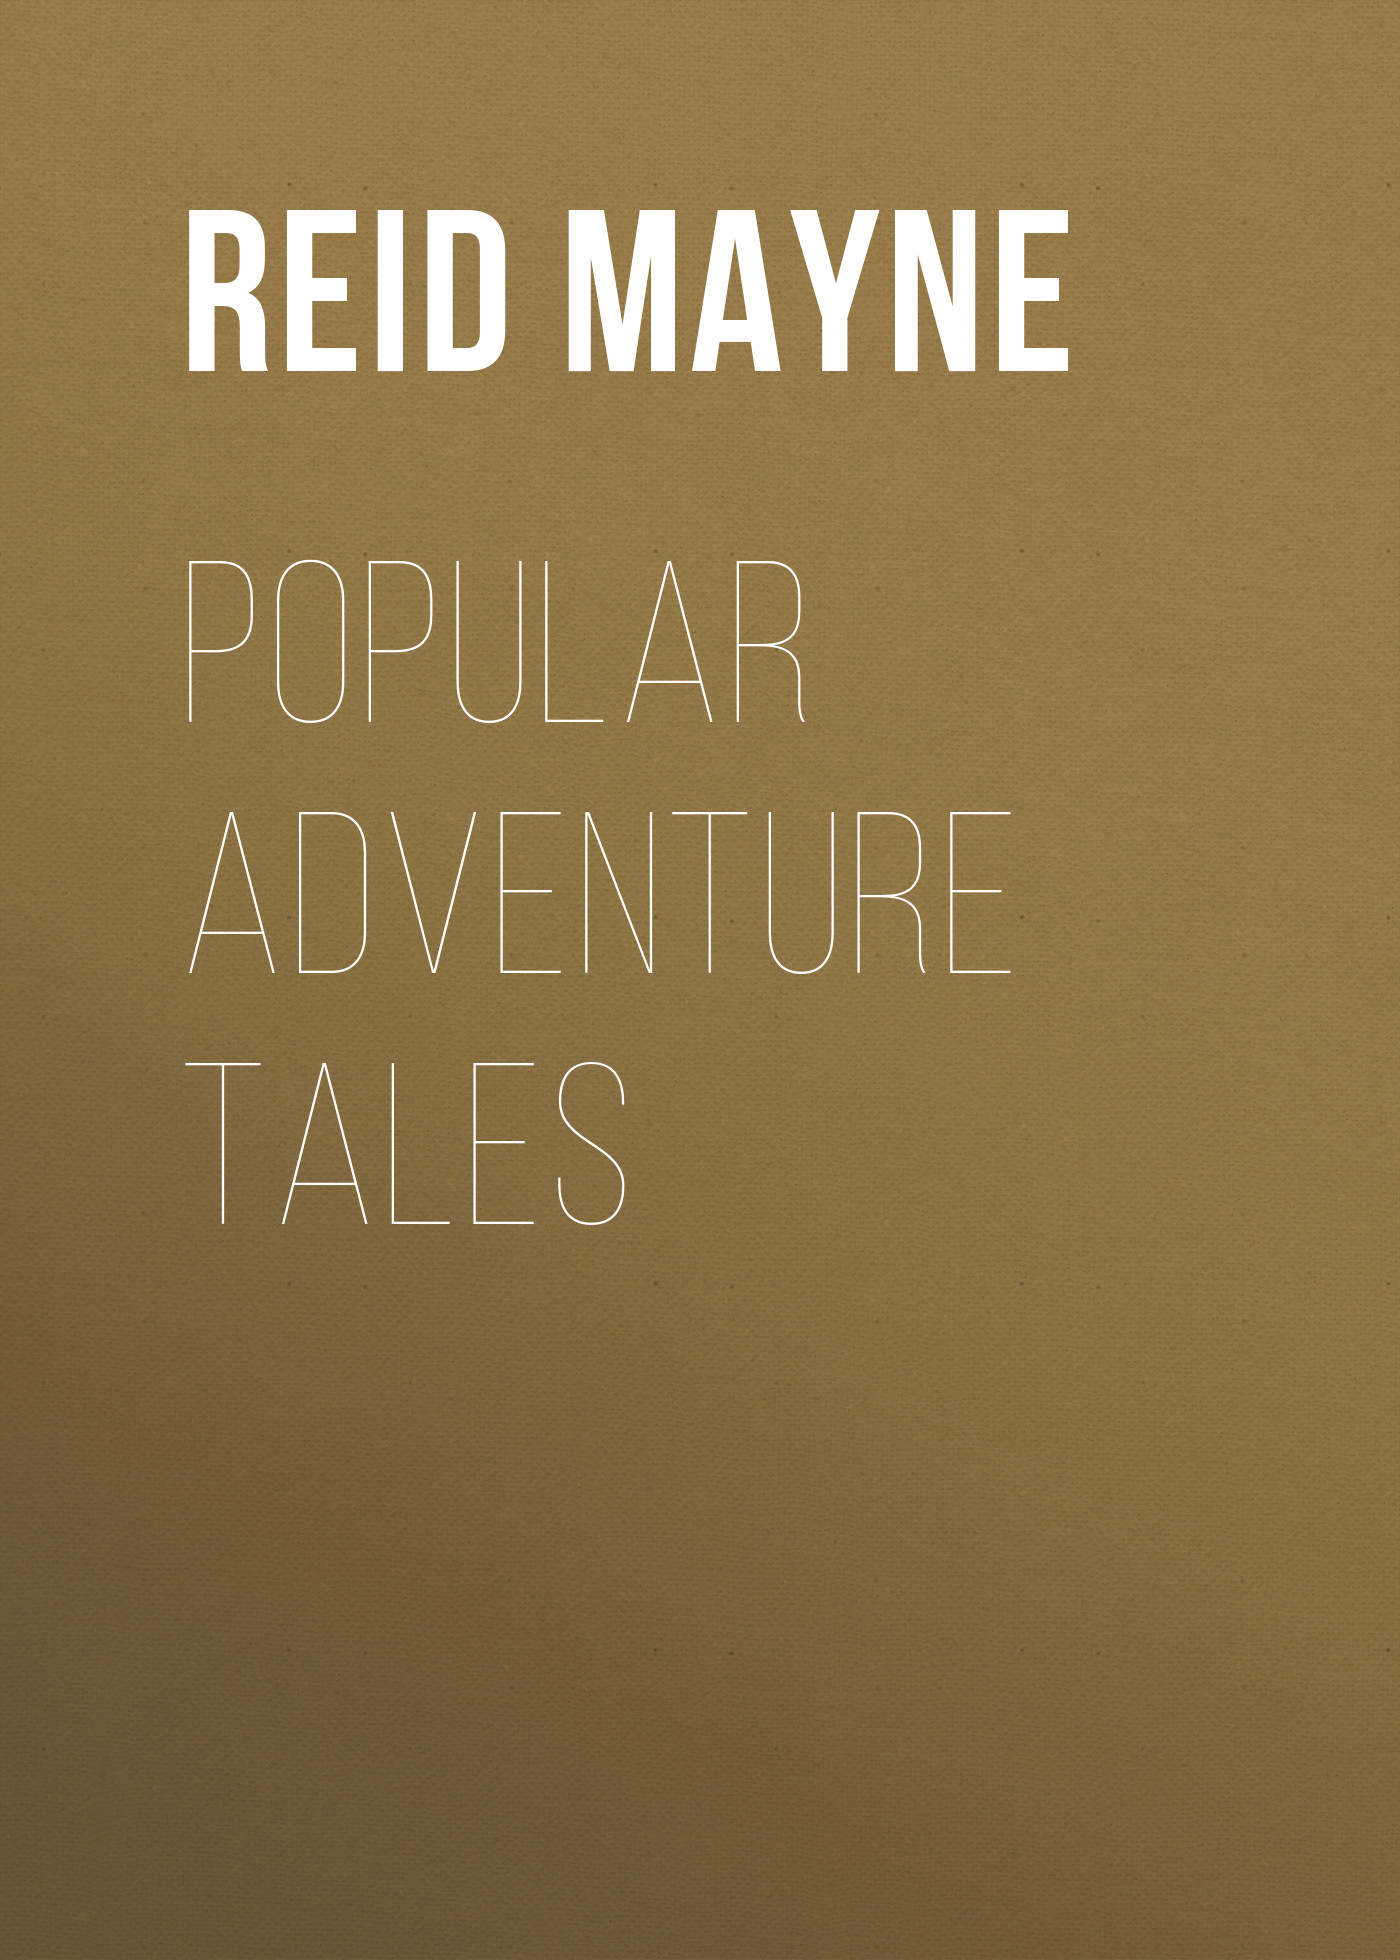 Книга Popular Adventure Tales из серии , созданная Mayne Reid, может относится к жанру Литература 19 века, Зарубежная старинная литература, Зарубежная классика, Зарубежные детские книги. Стоимость электронной книги Popular Adventure Tales с идентификатором 25449572 составляет 0 руб.